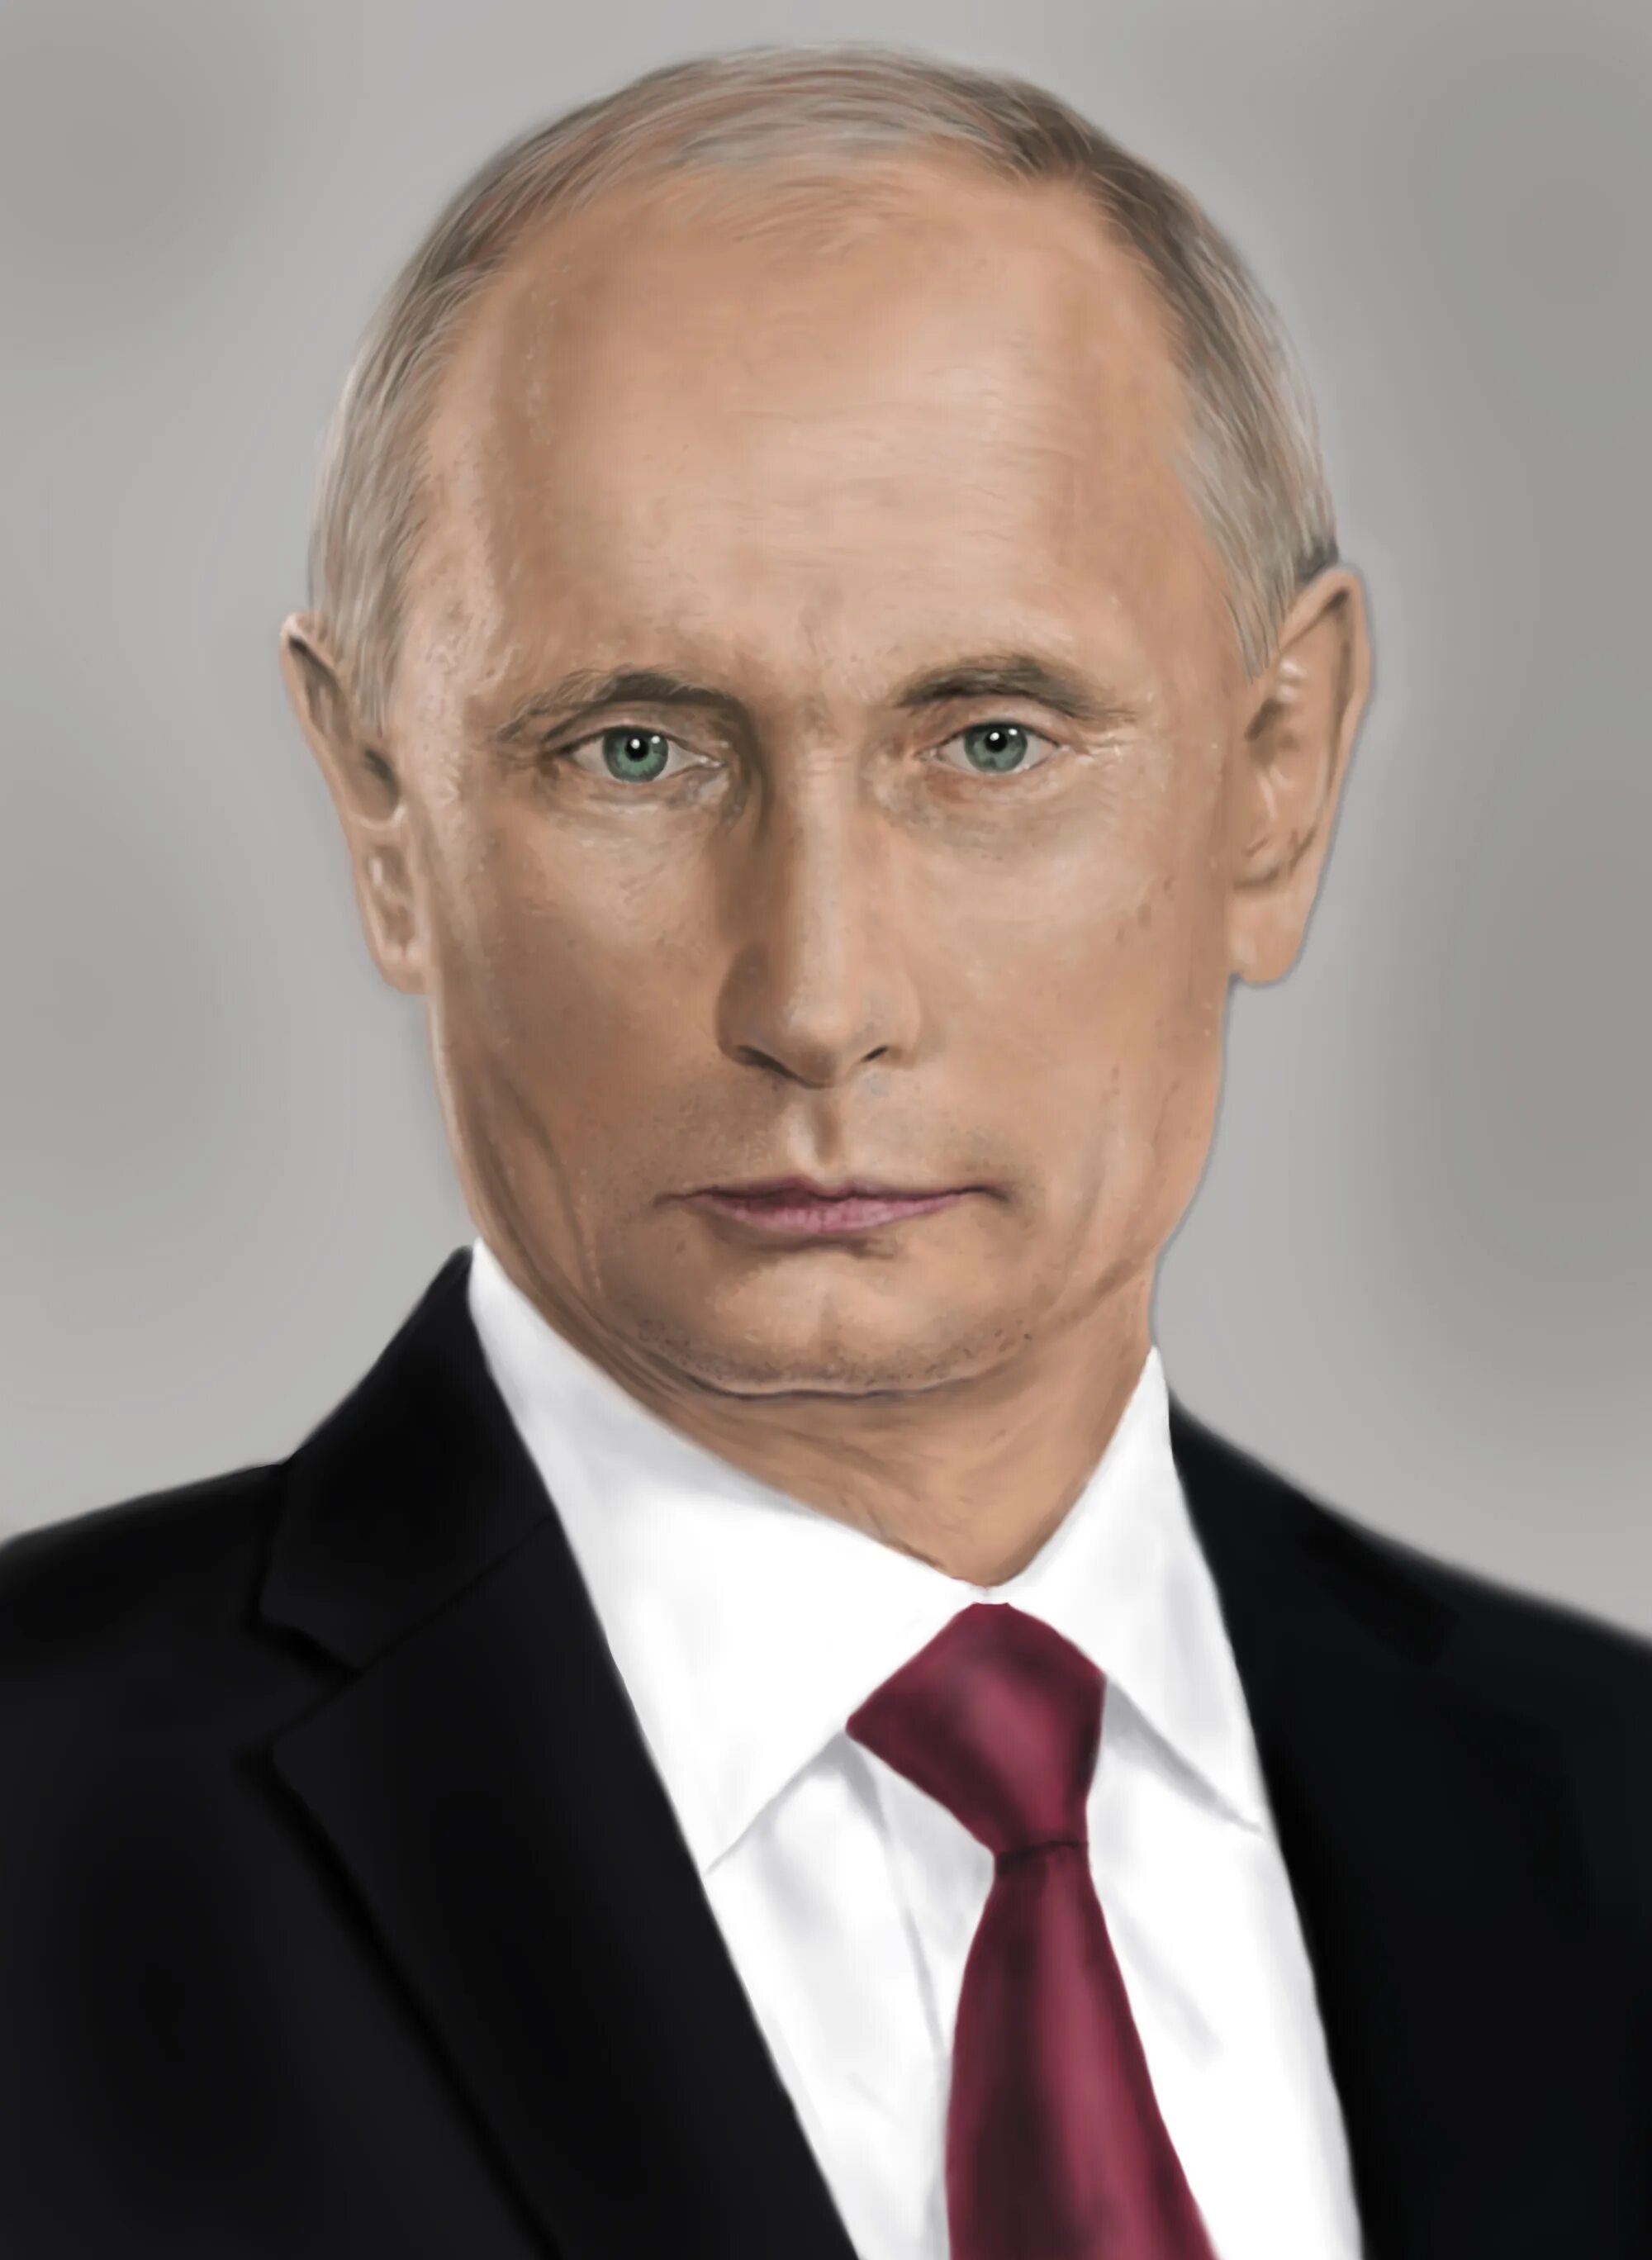 Лица президента. Портрет Путина а4.